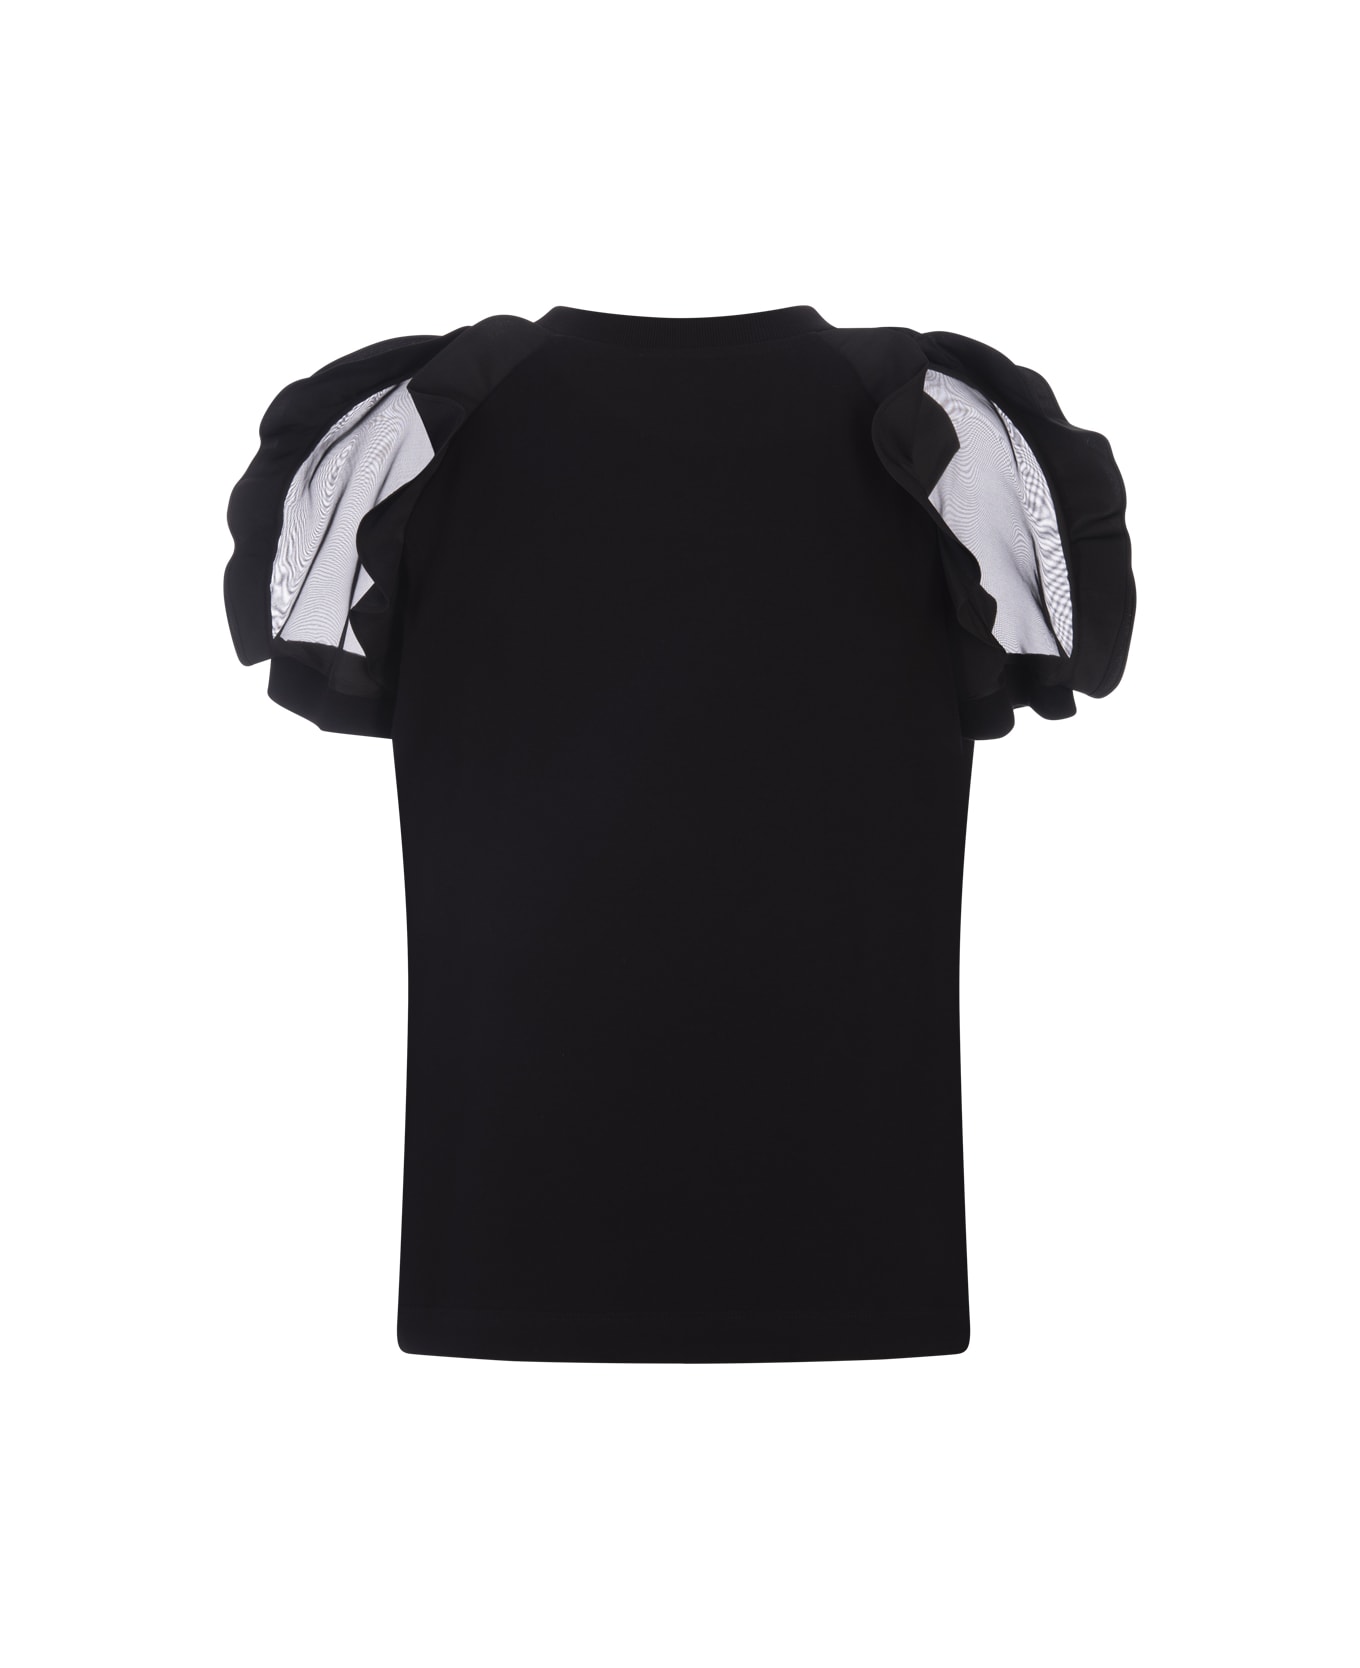 Alexander McQueen Black T-shirt With Ruffles Detail - Black